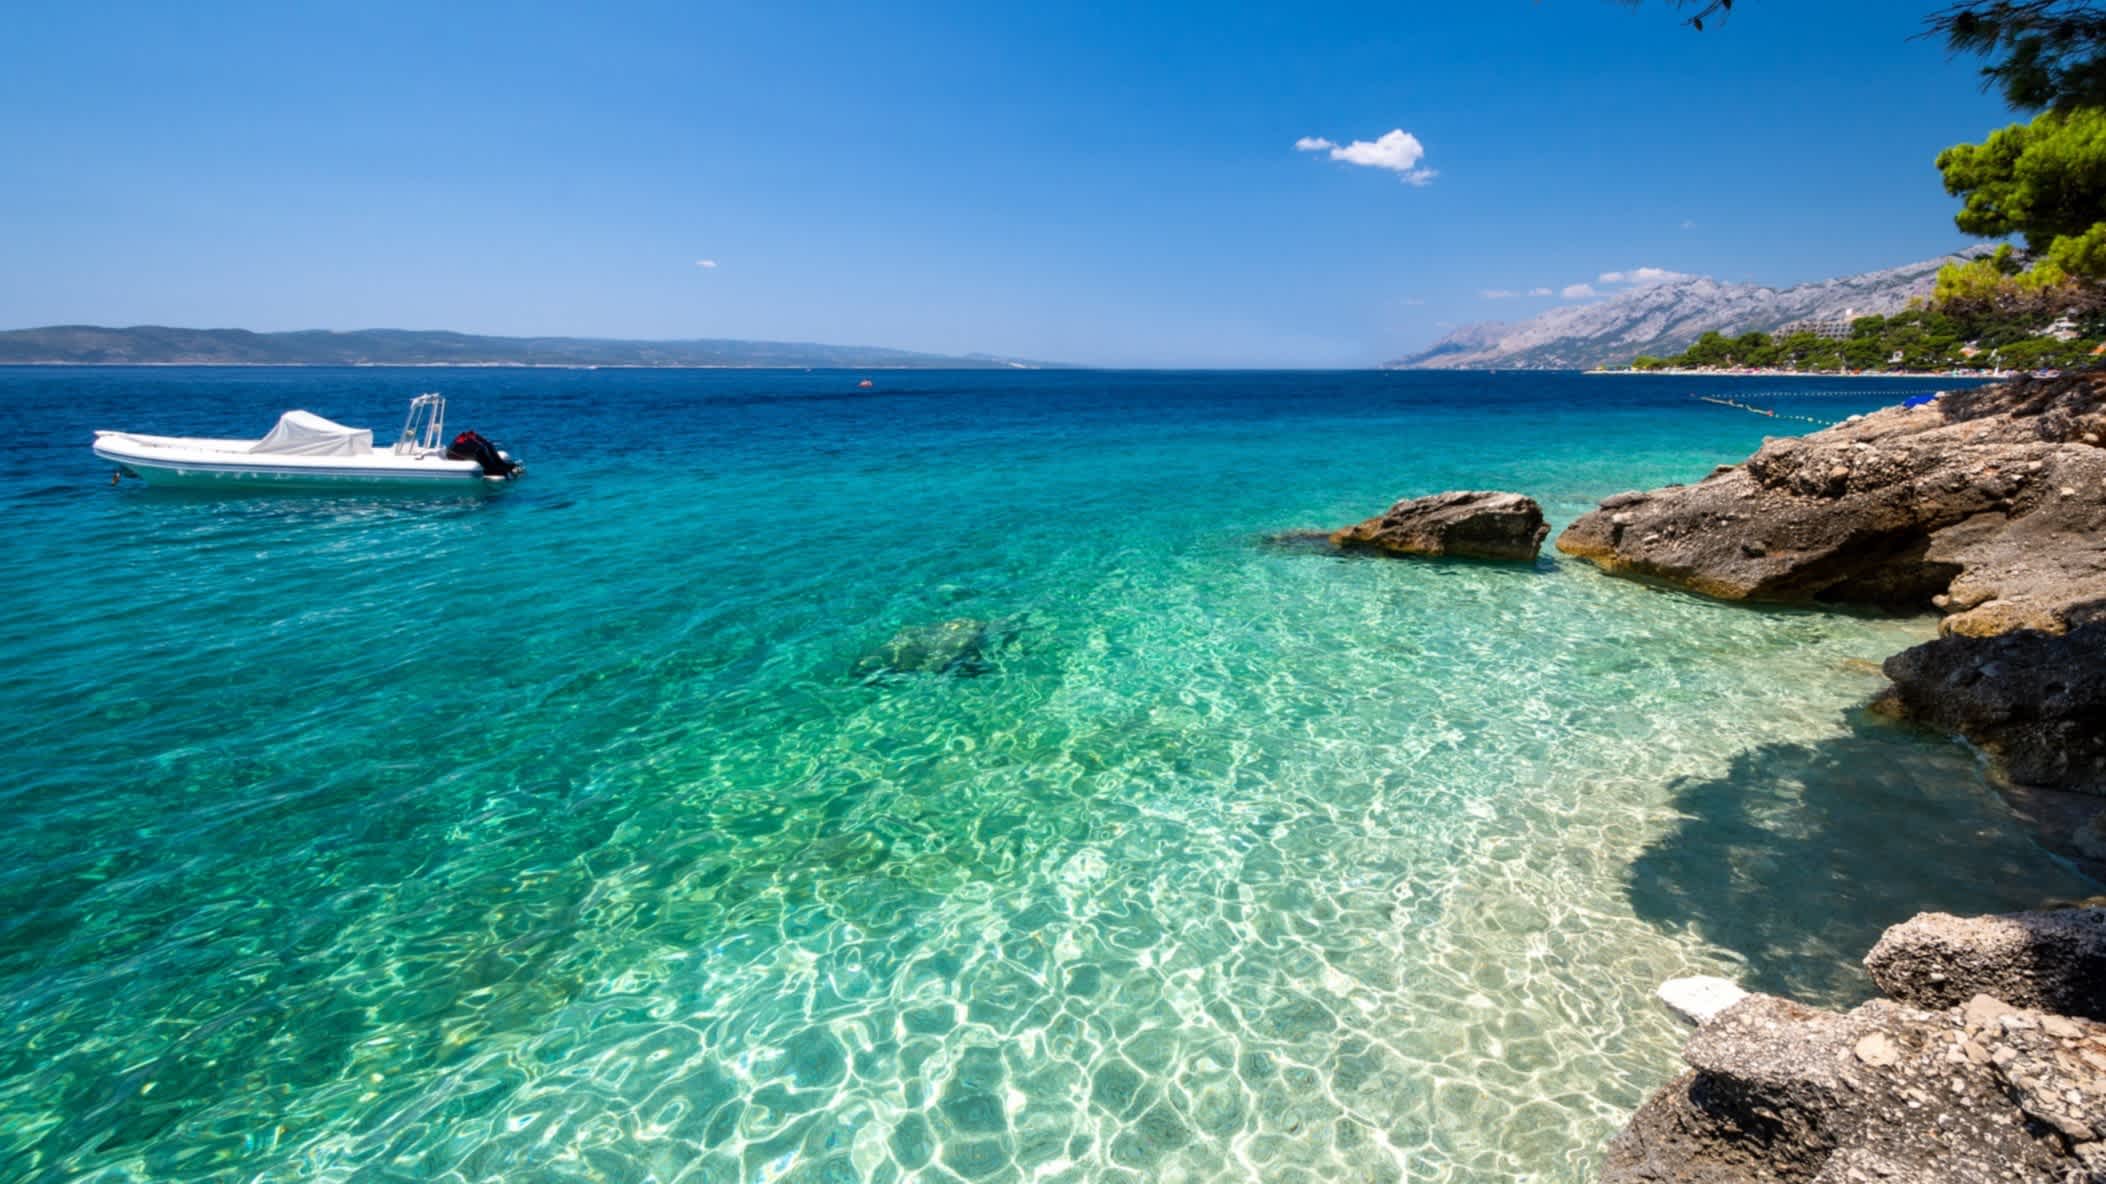 Der Strand und ein Boot am Ufer an der Makarska Riviera, Kroatien bei strahlendem Himmel.